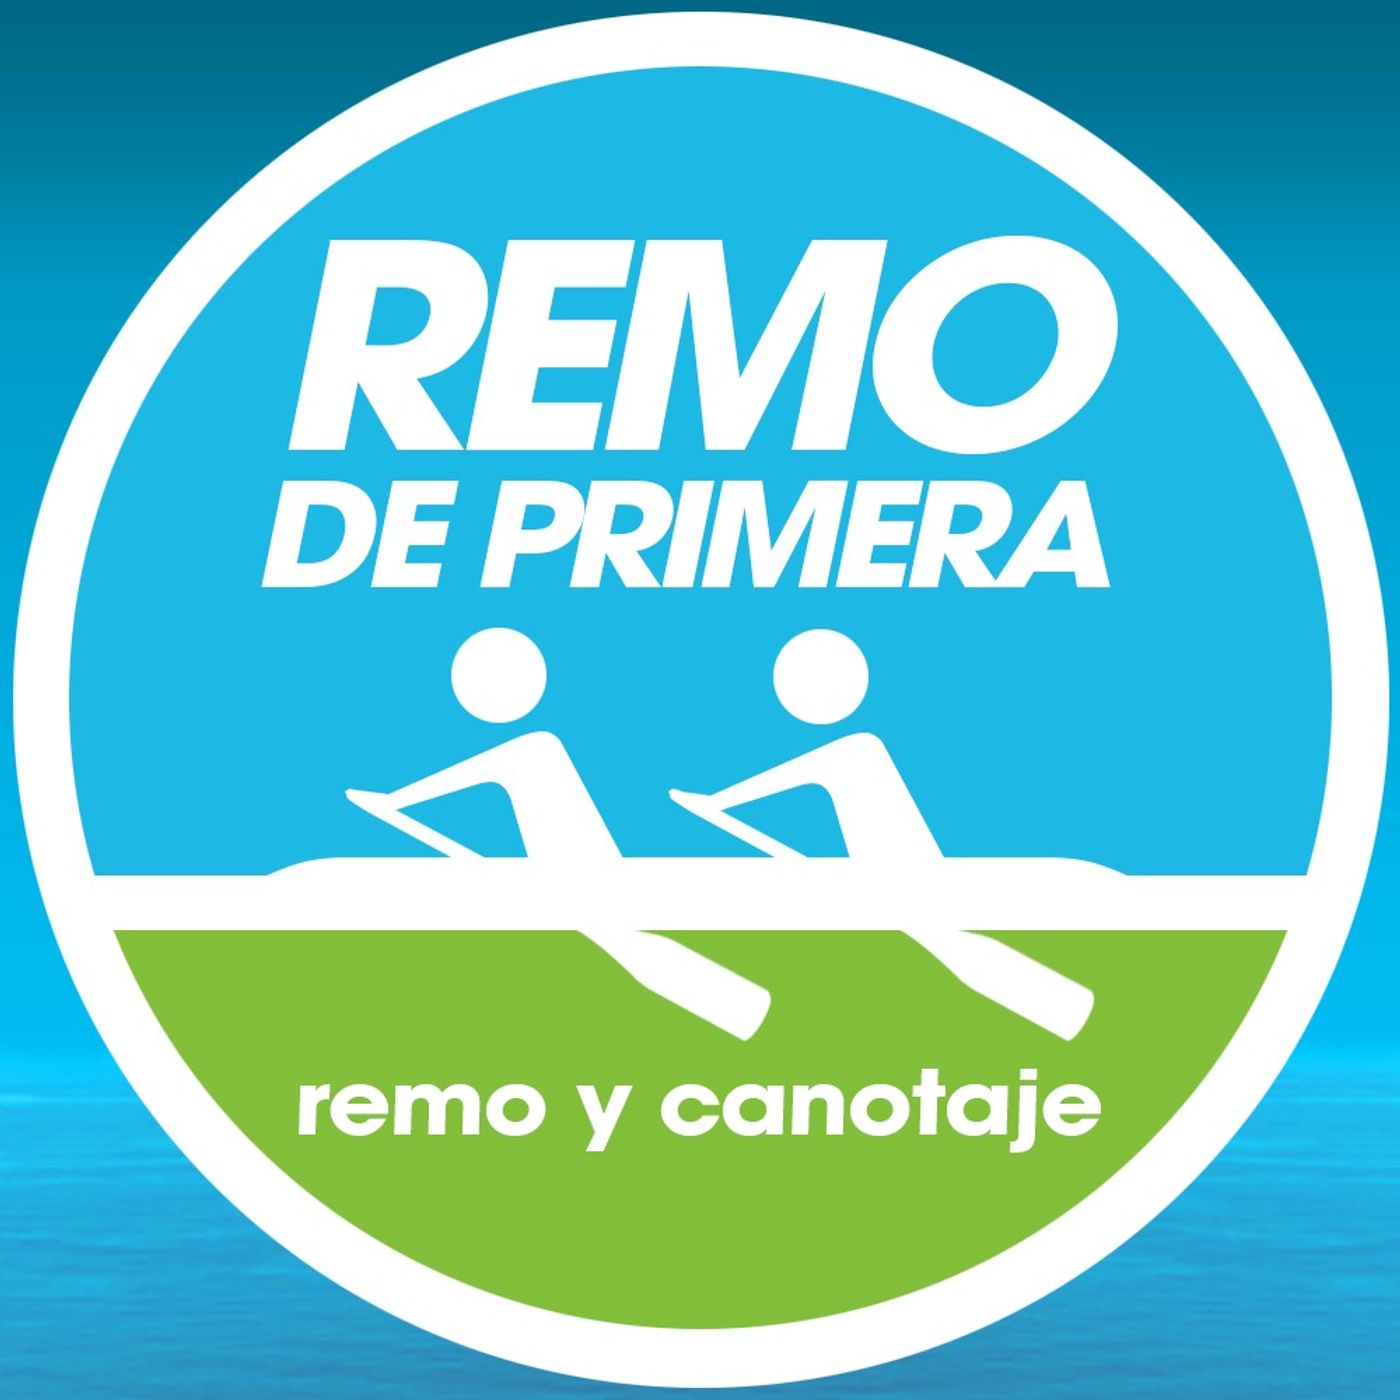 El podcast de Remo De Primera